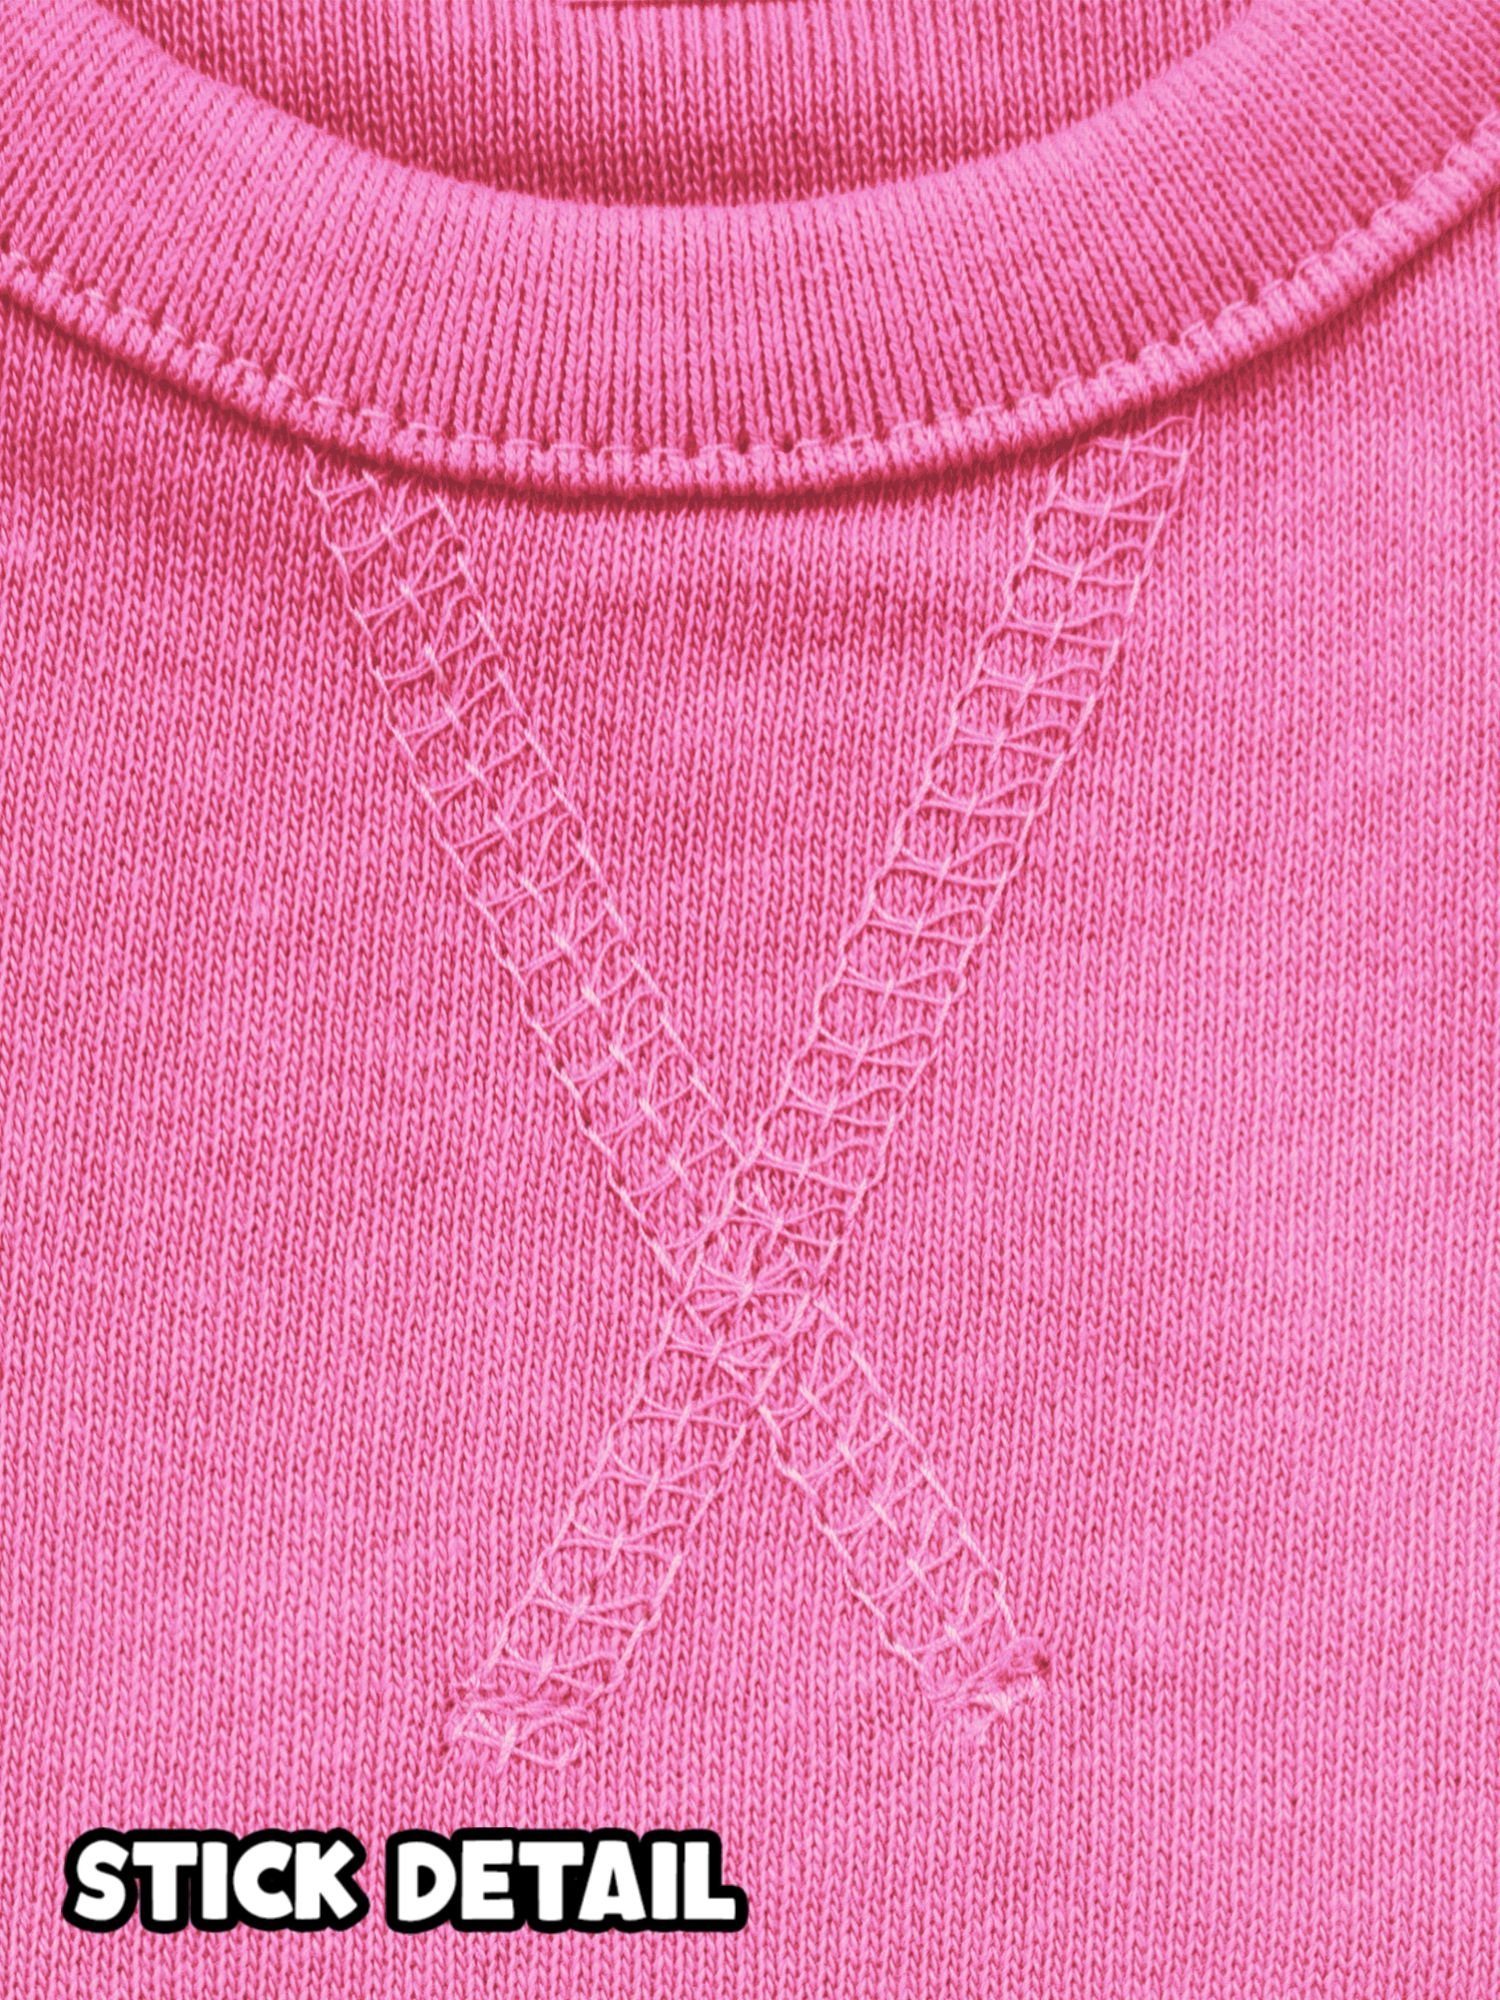 Shirtracer Sweatshirt So gut kann Pink Geburtstag aussehen mit 1. eins 2 man